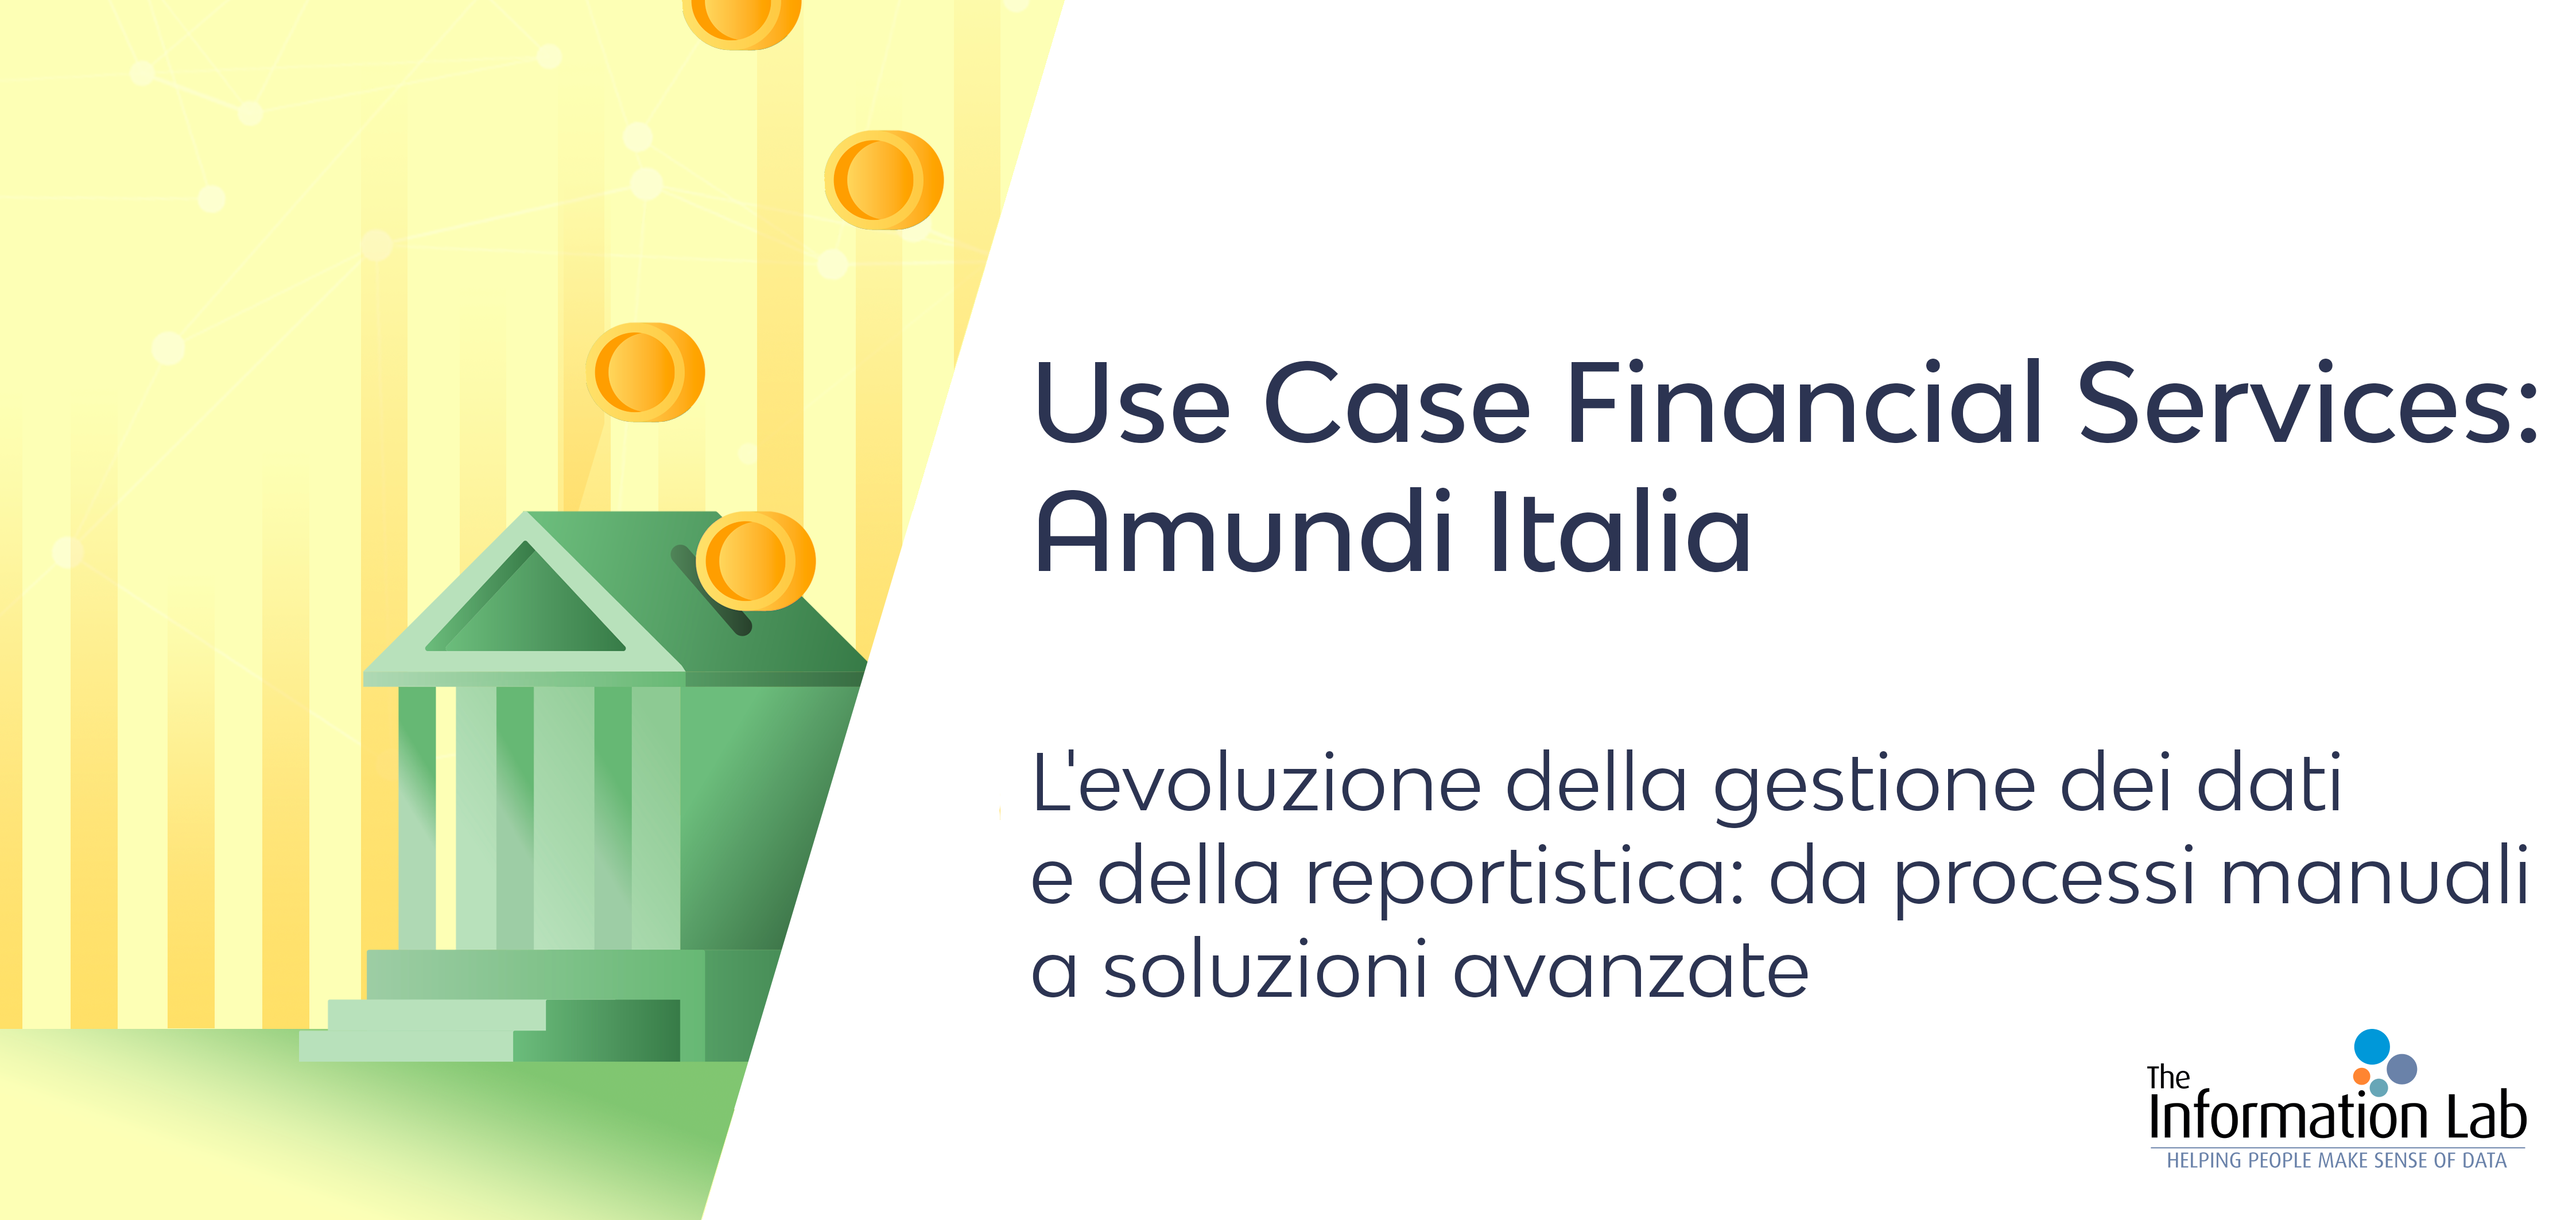 Use Case Financial Services: Amundi Italia